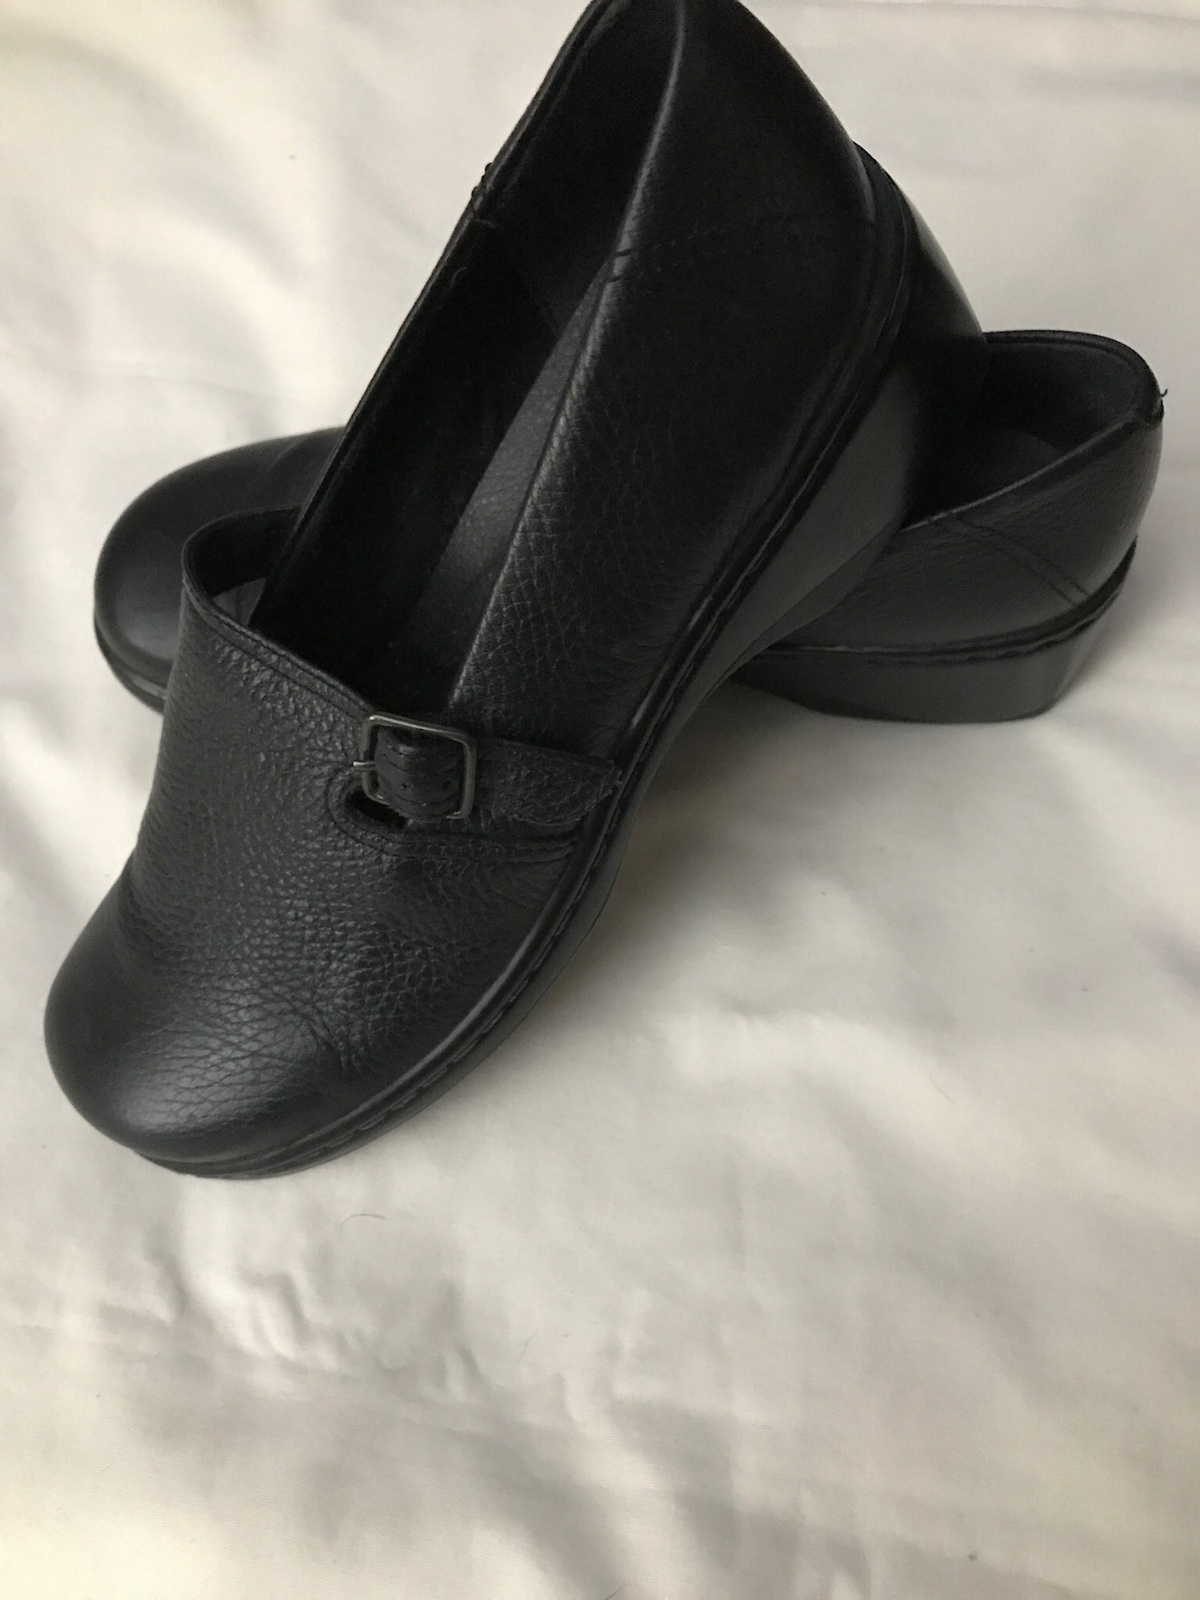 Women's Clarks Shoes Size 8P - Flats & Oxfords